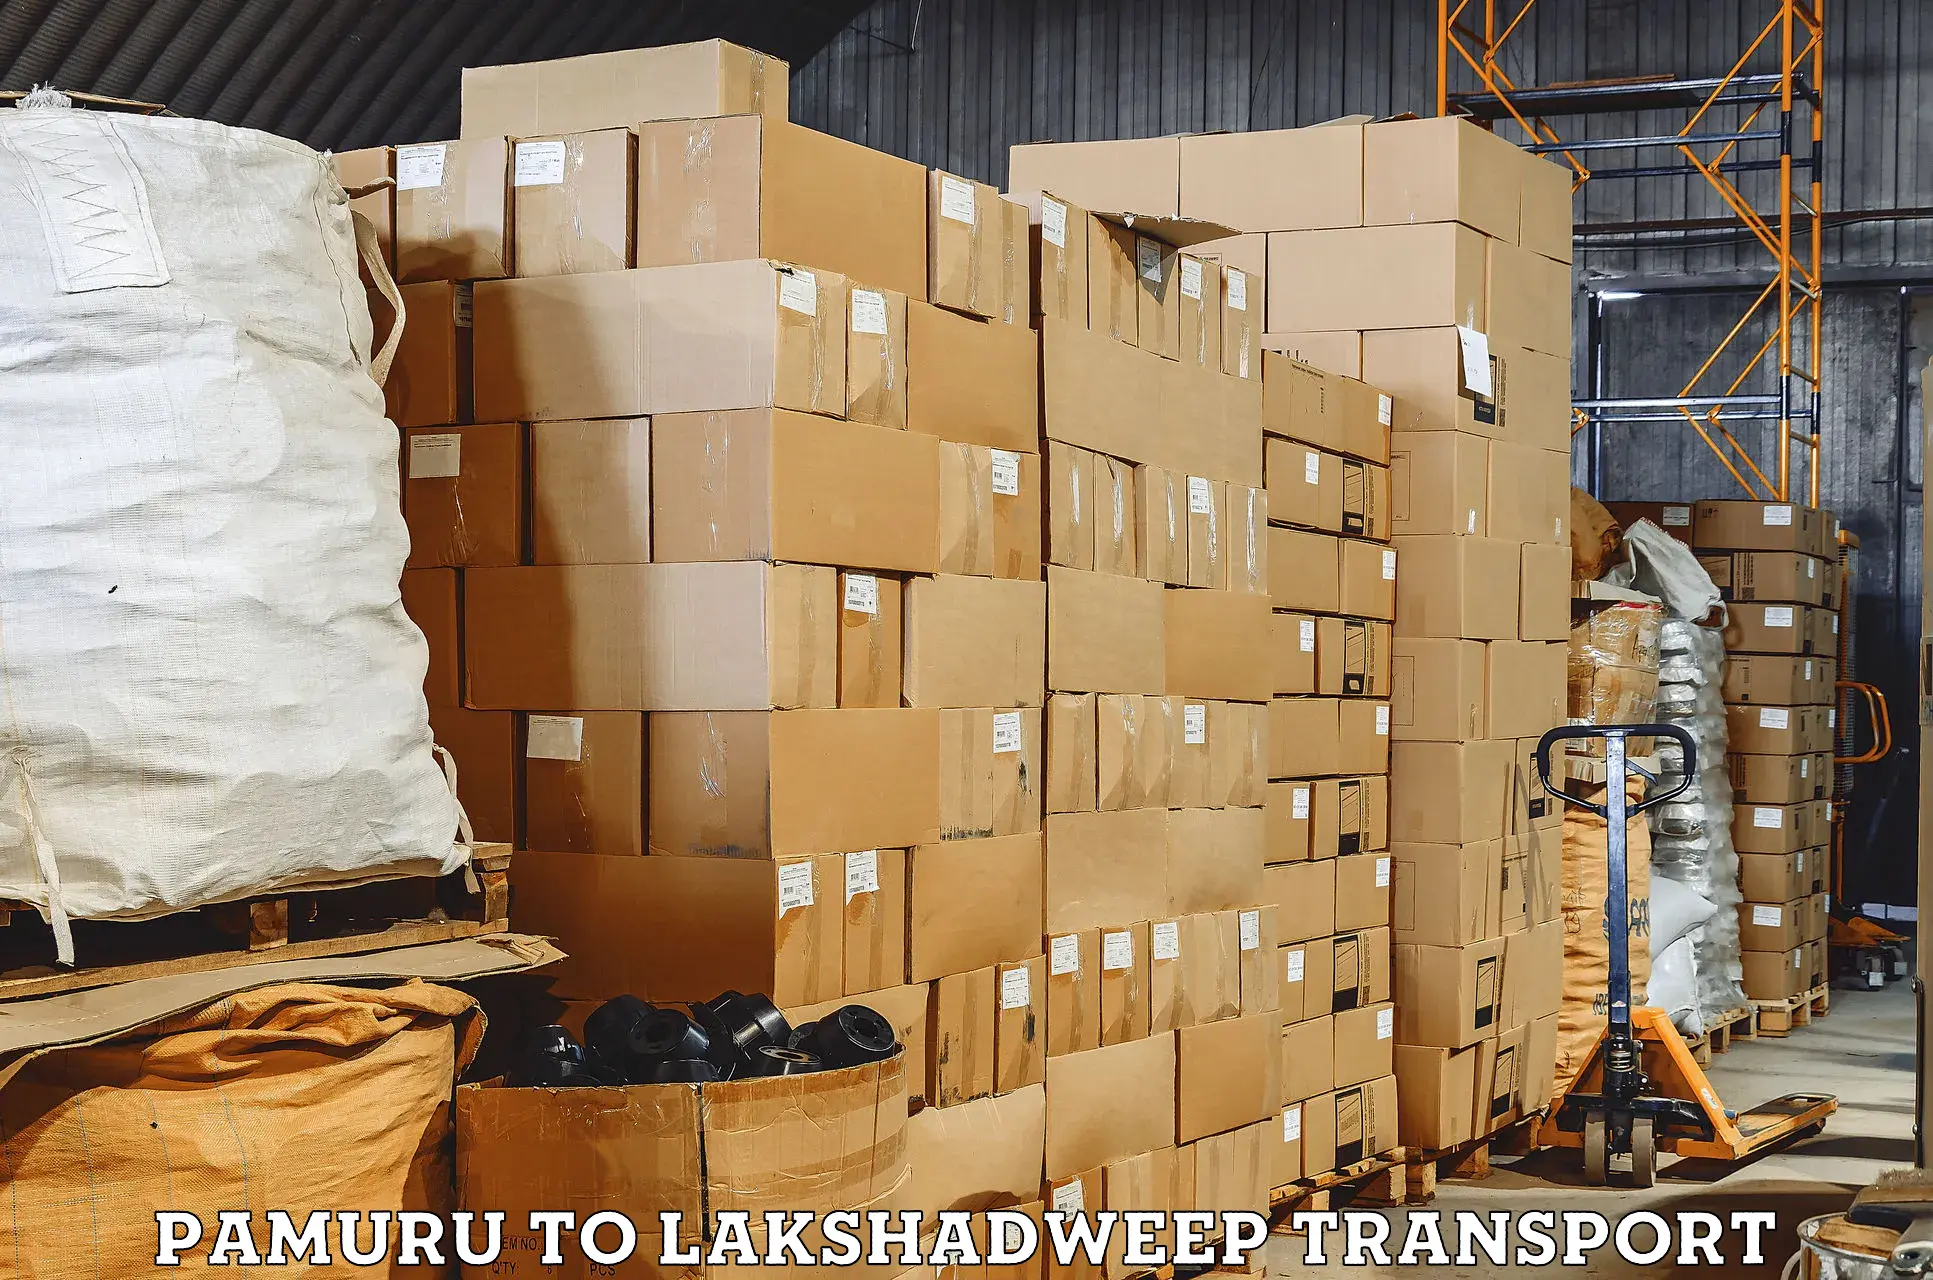 Transport in sharing Pamuru to Lakshadweep